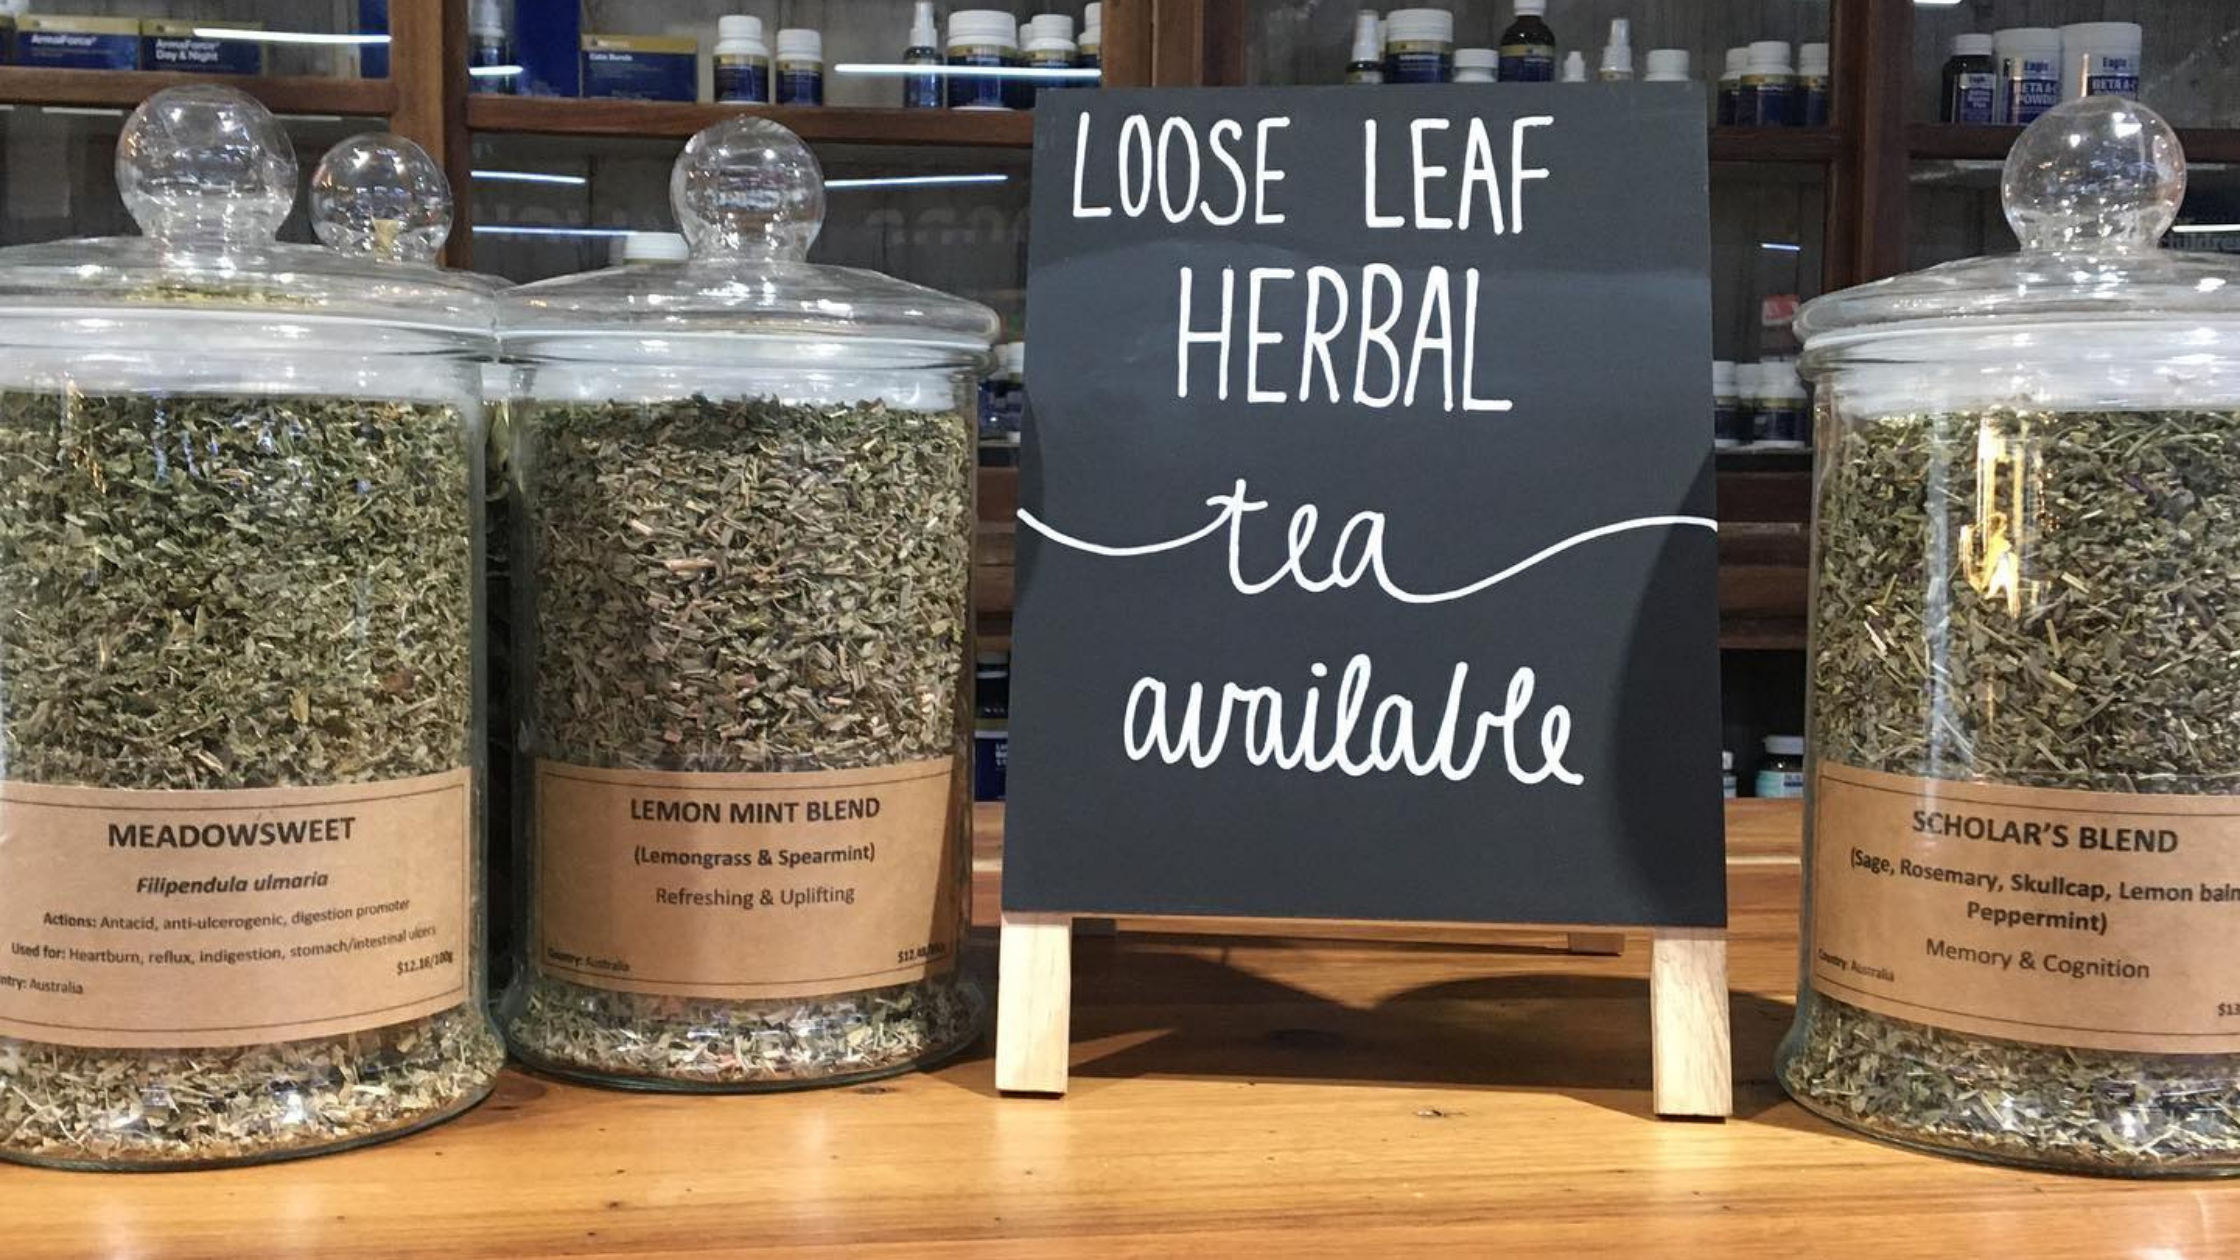 Loos leaf herbal tea cannisters